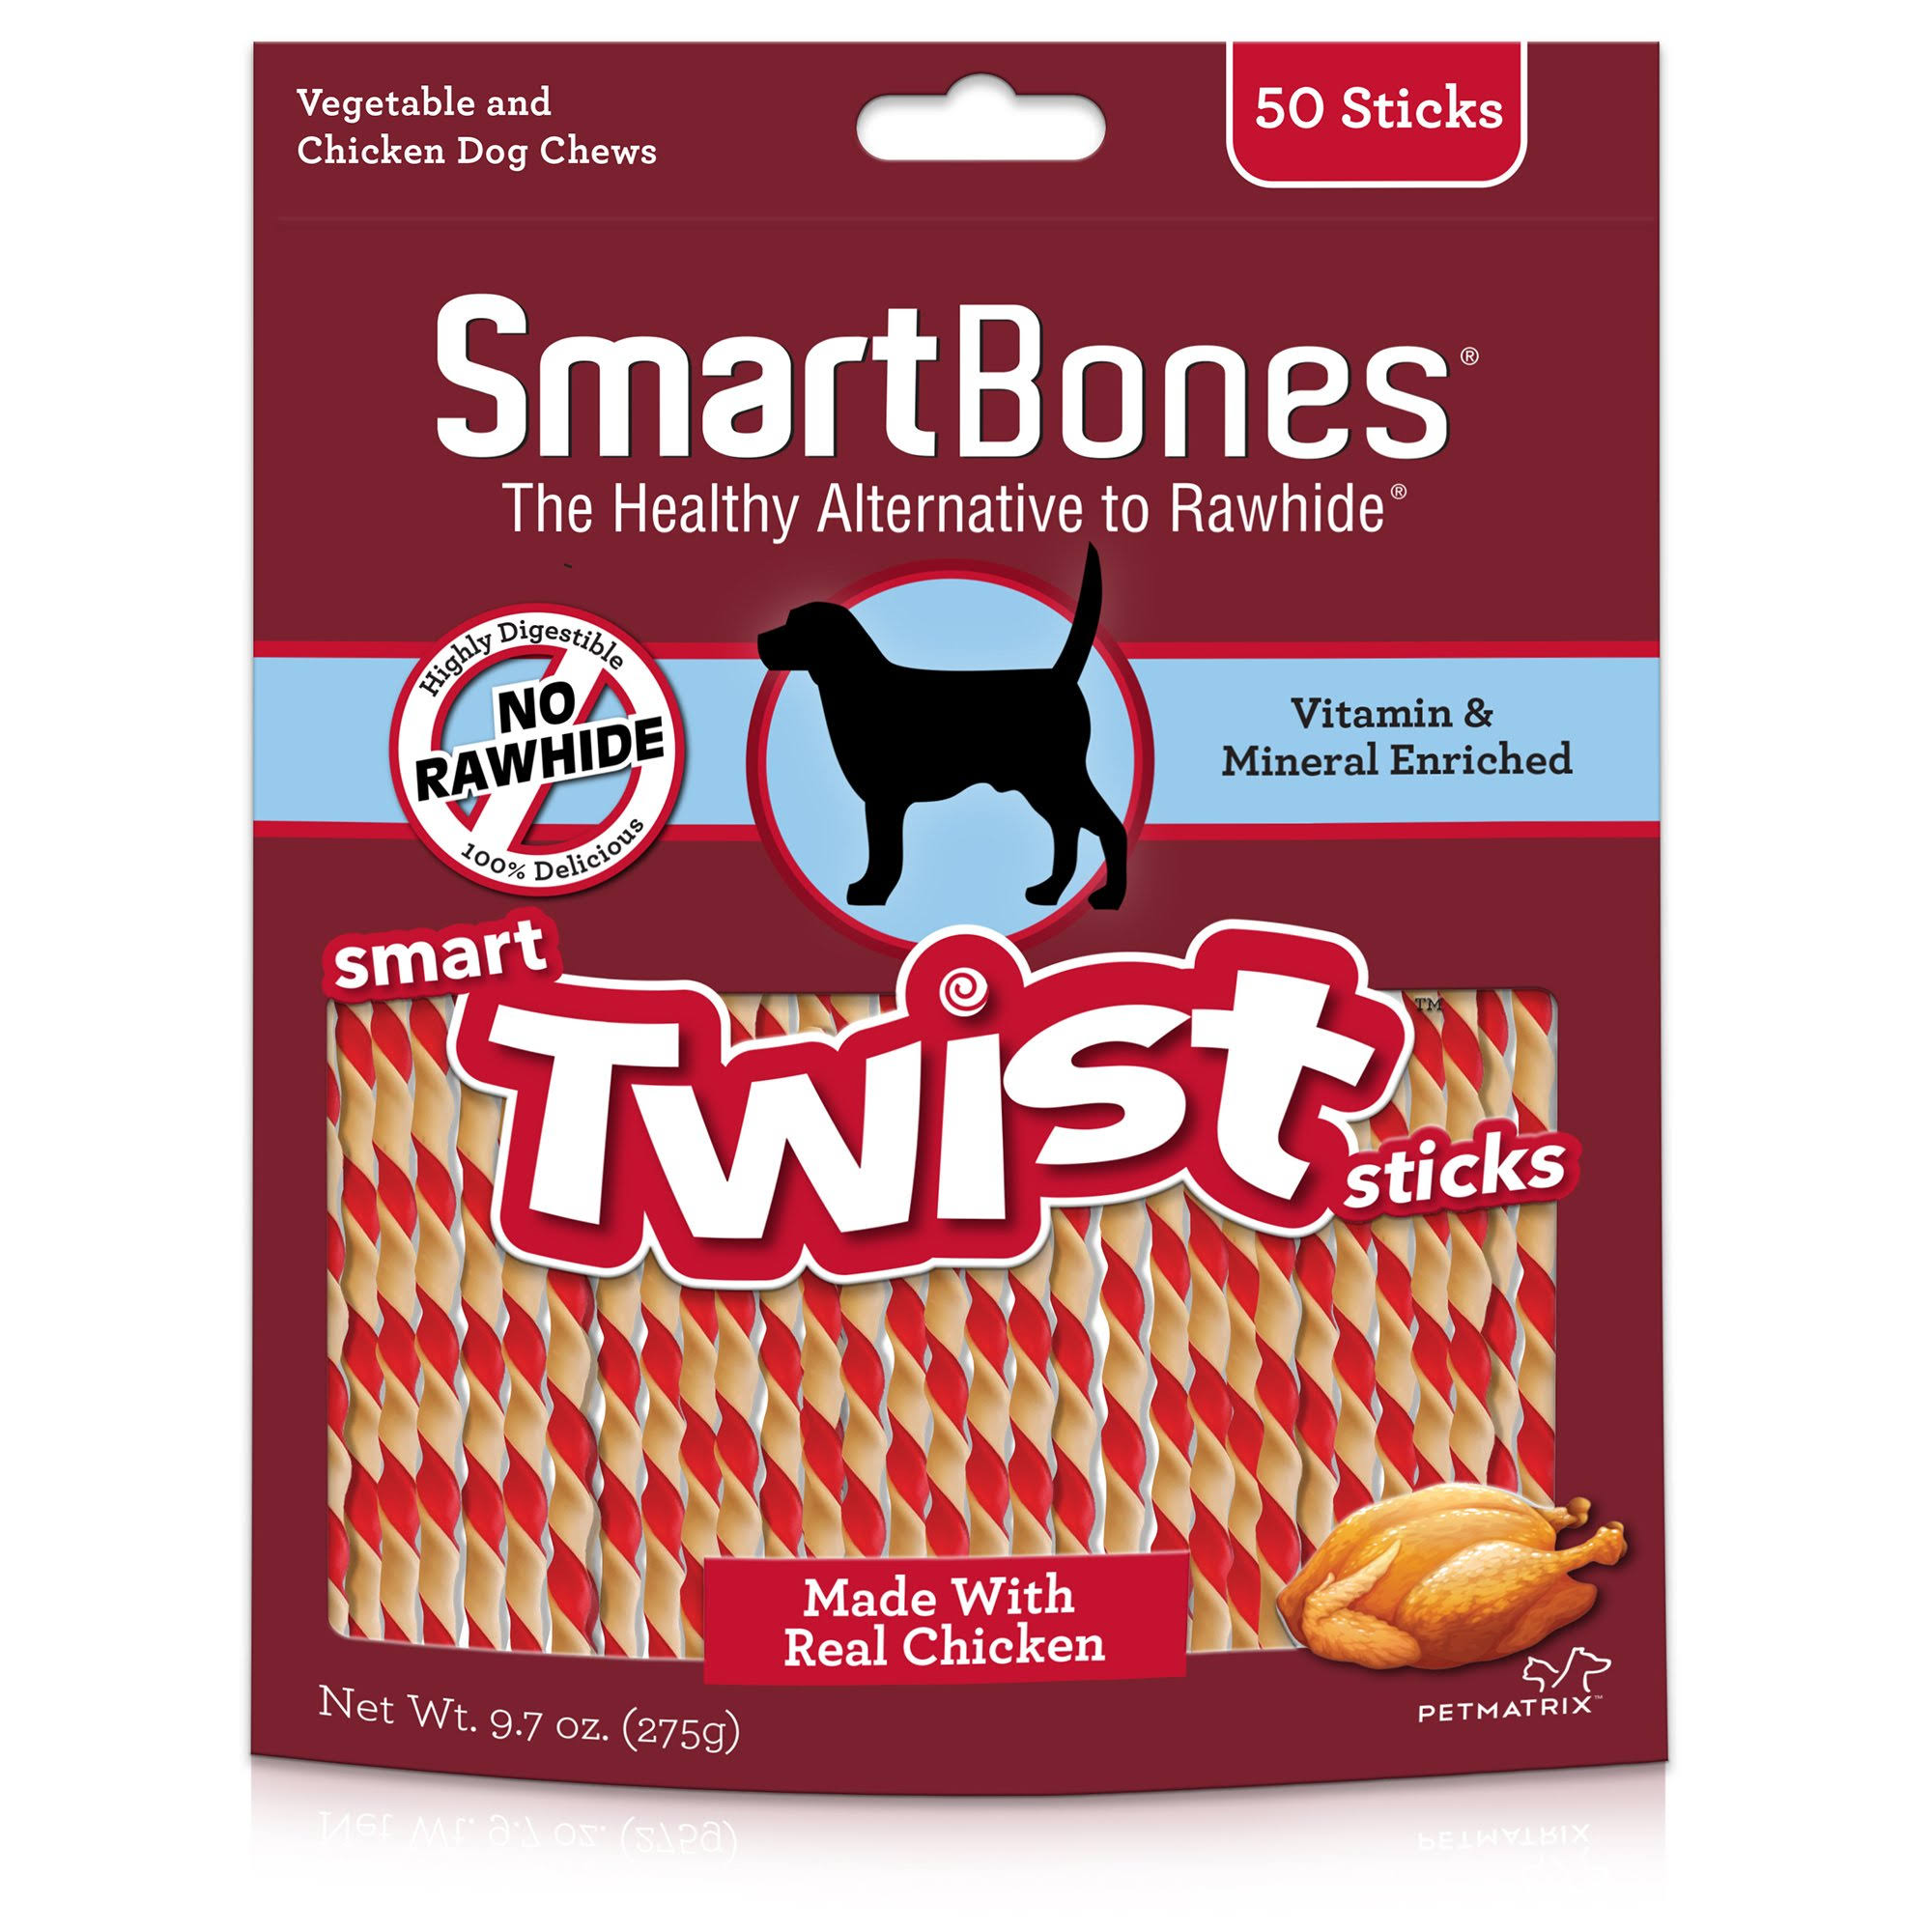 SmartBones Smart Twist Sticks